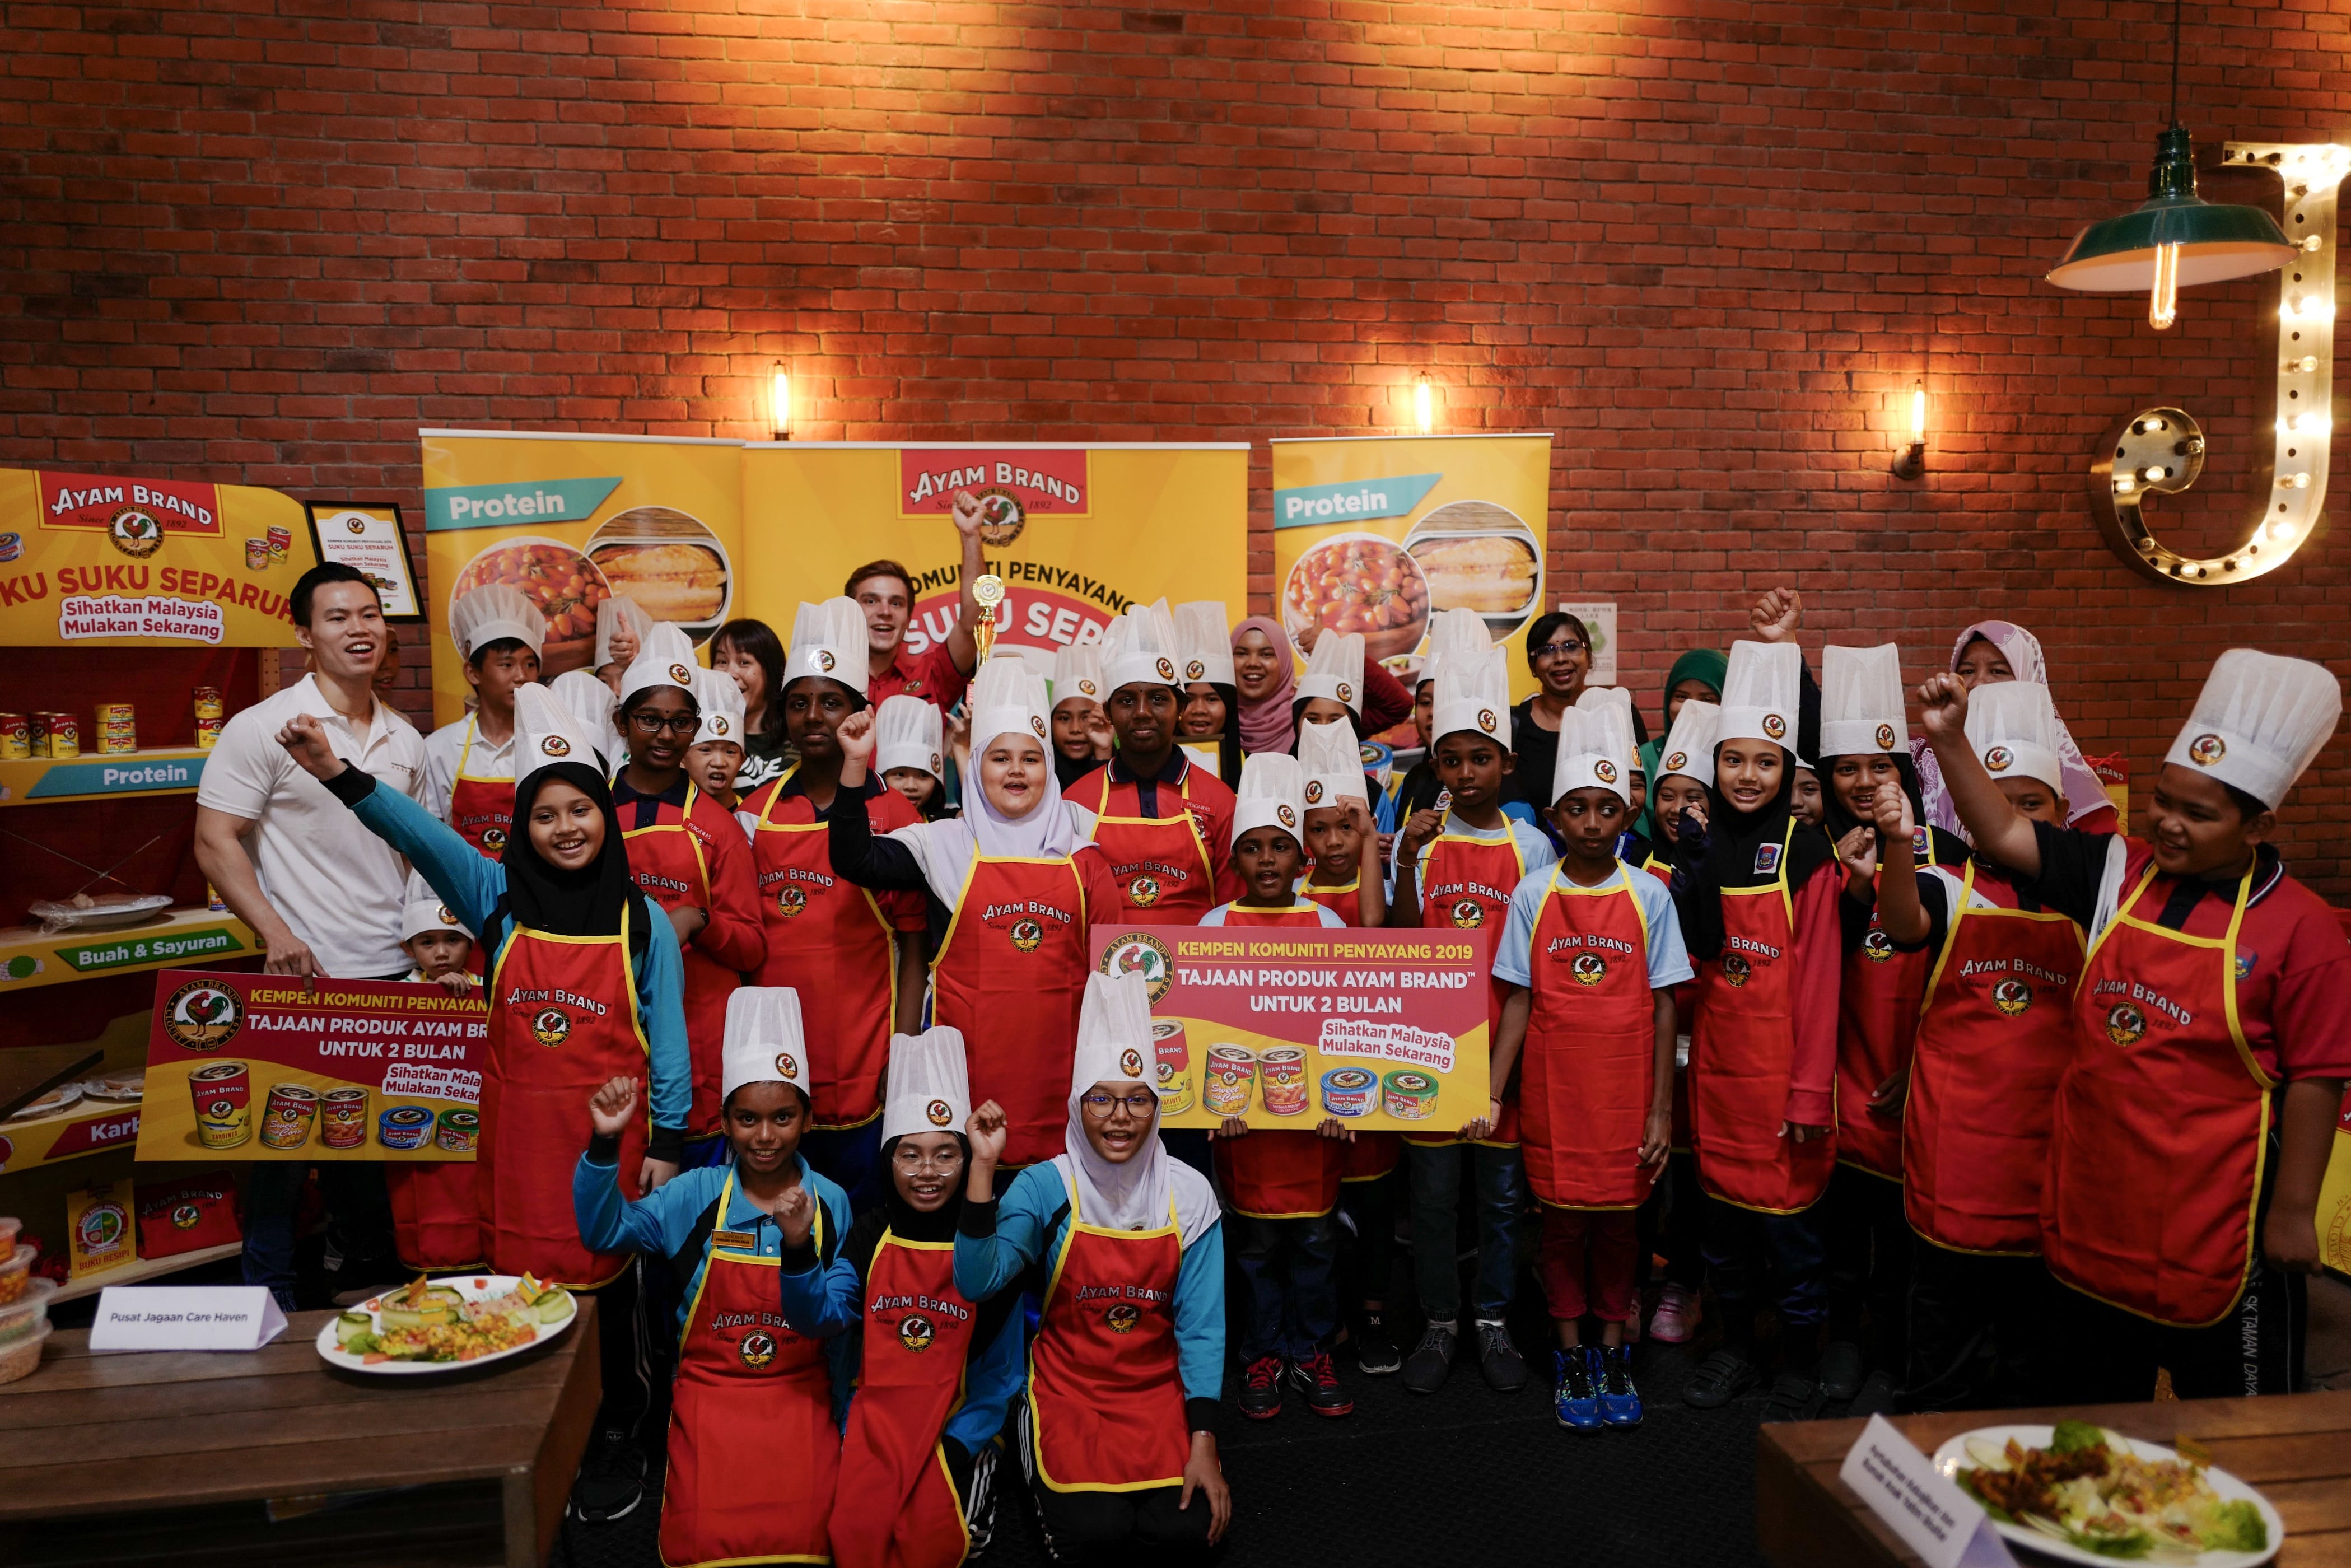 Kempen Penyayang Komuniti Ayam Brand™ 2019 Bawa Mesej Nutrisi Seimbang Ke Negeri Johor untuk Menangani Masalah Obesiti dalam Kalangan Kanak-Kanak